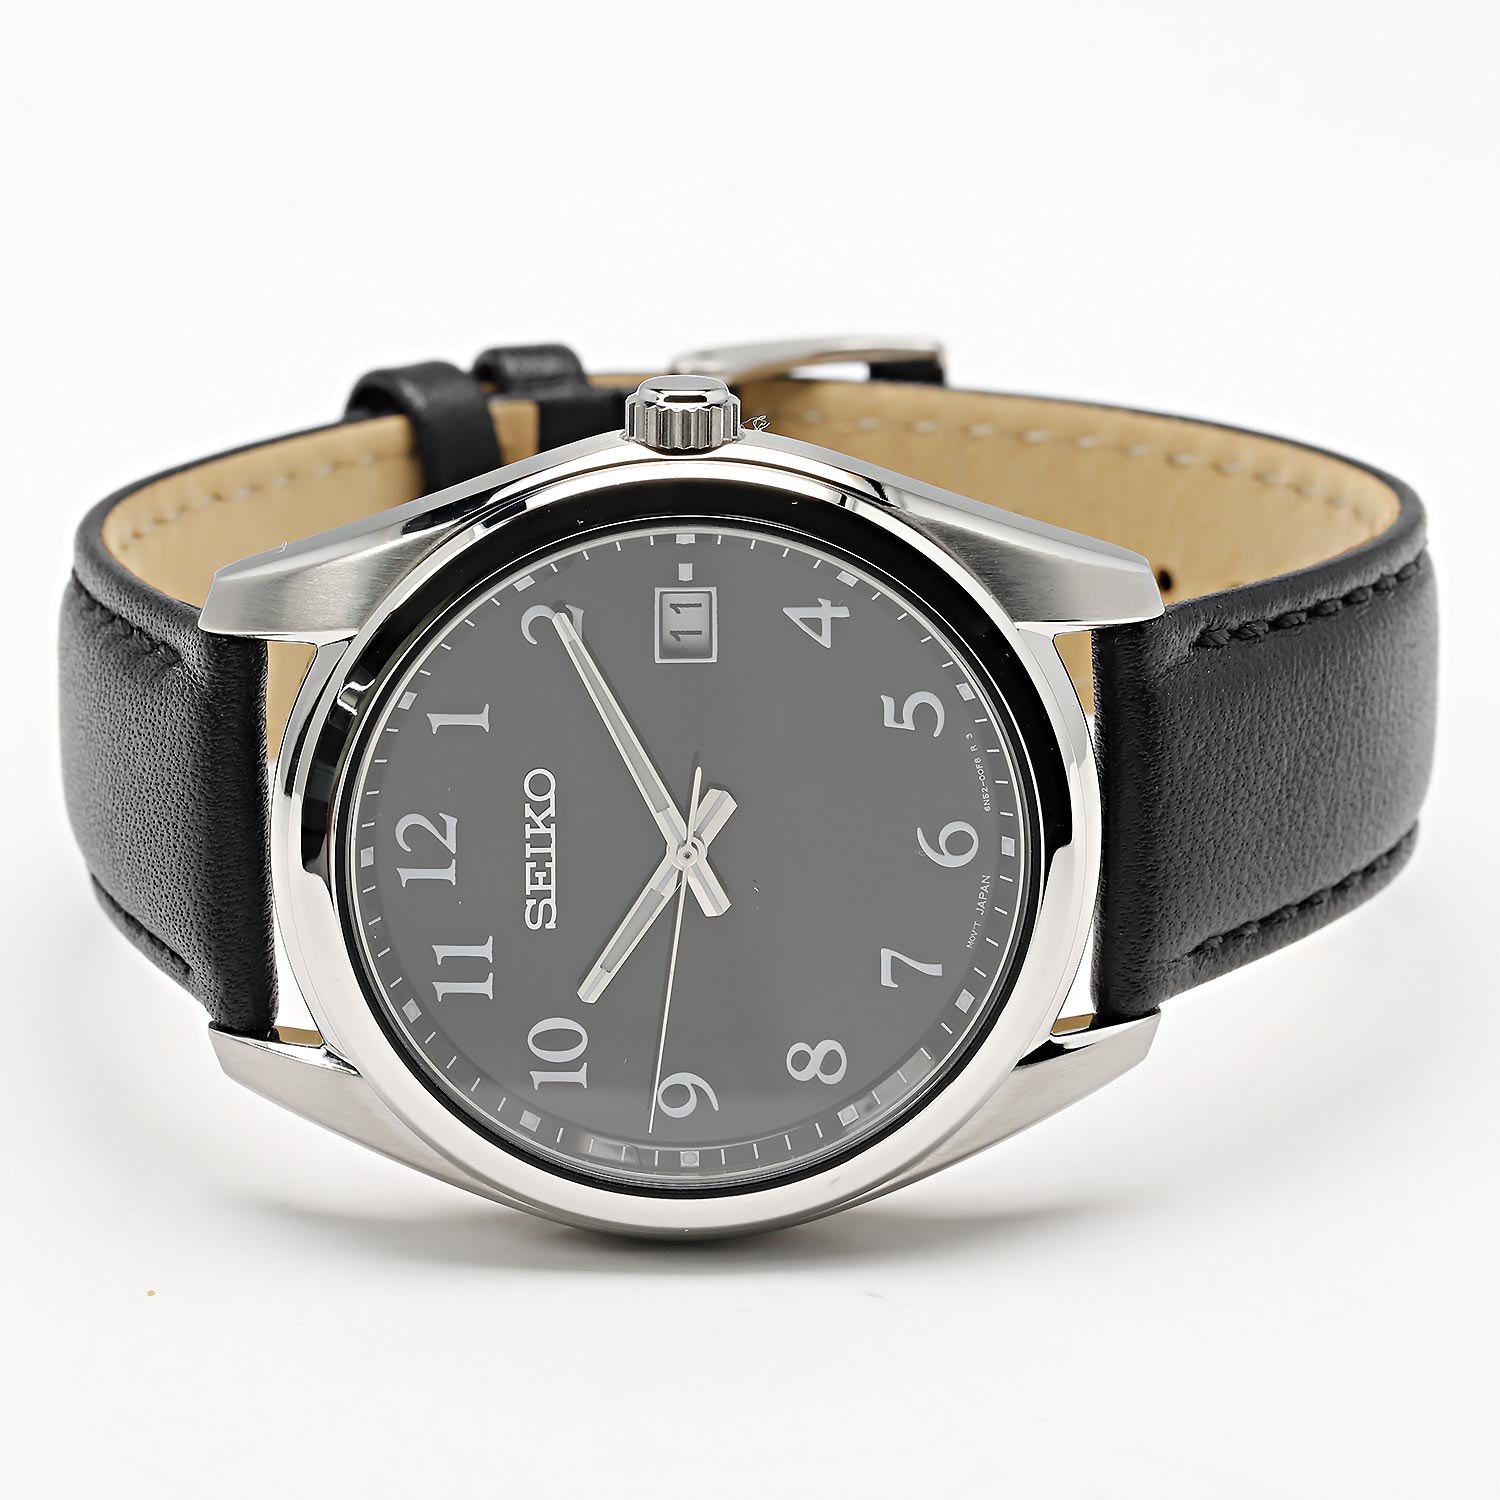 Наручные часы Seiko SUR461P1 — интернет-магазине цене, купить лучшей в описание фото, AllTime.ru по инструкция, характеристики